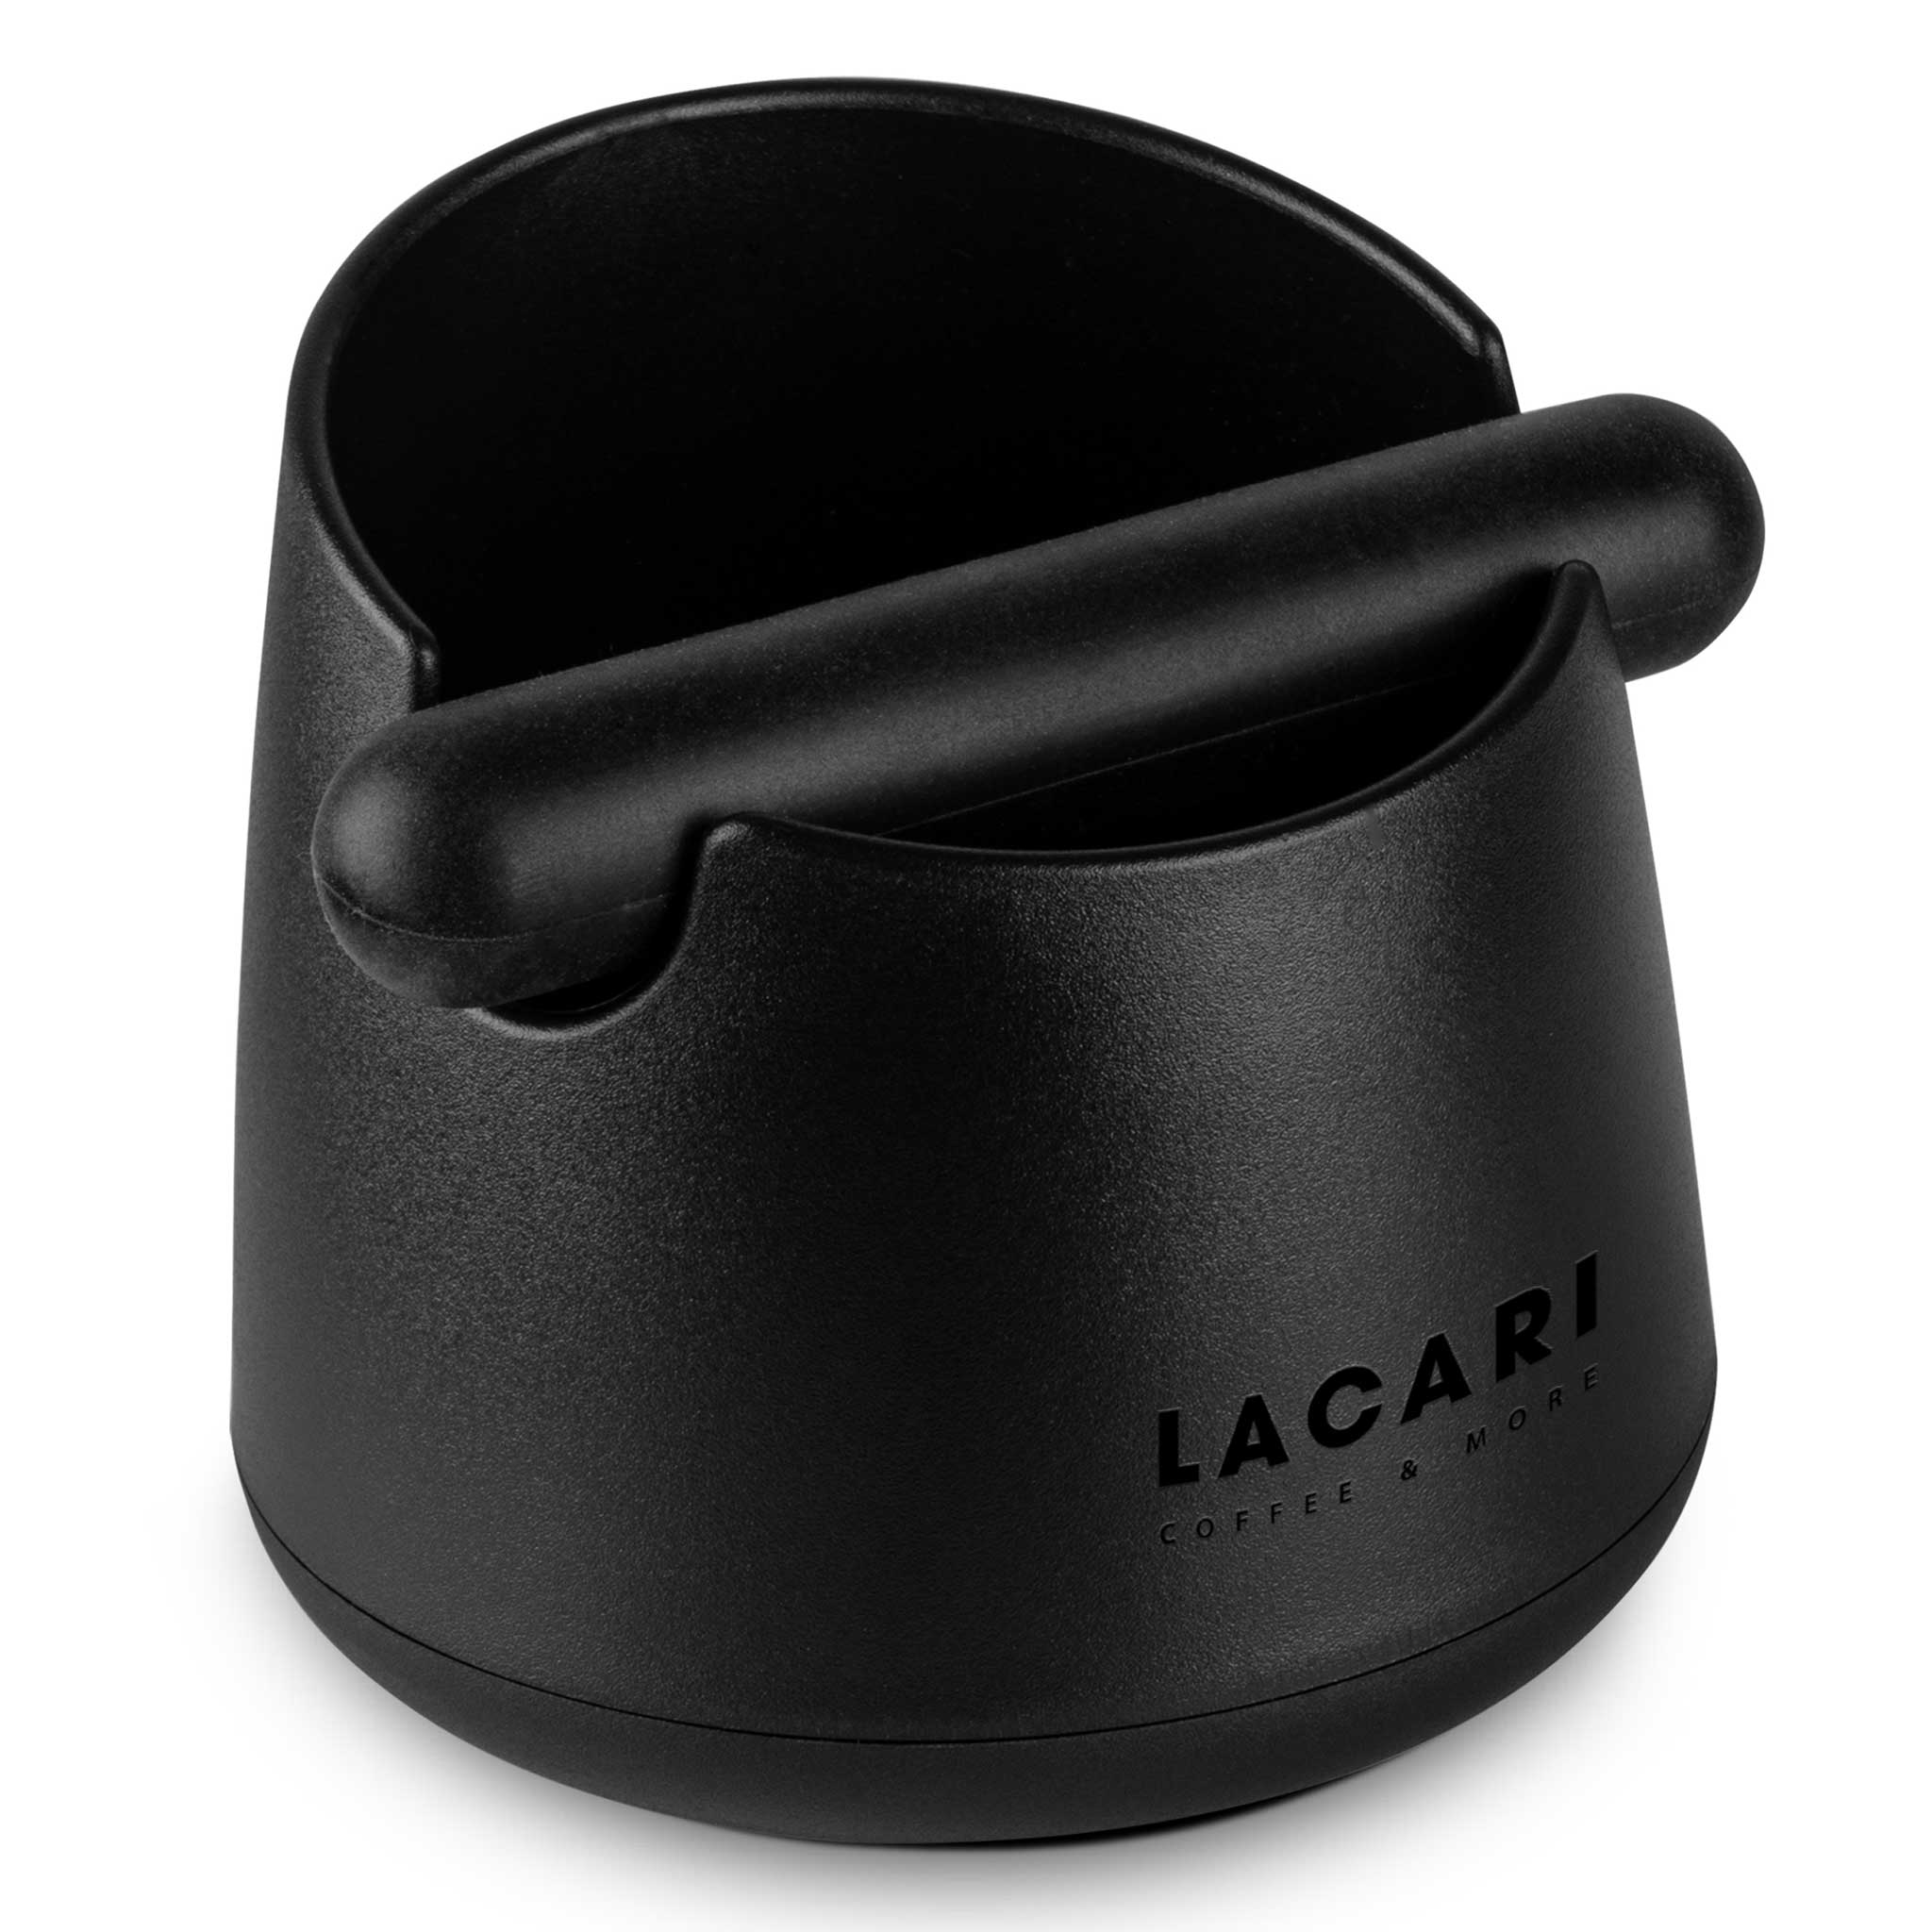 LACARI Abklopfbehälter - Der perfekte Espresso-Genuss aus recyclebarem Kunststoff Zubehör für Kaffee- &amp; Espressomaschinen Lacari 